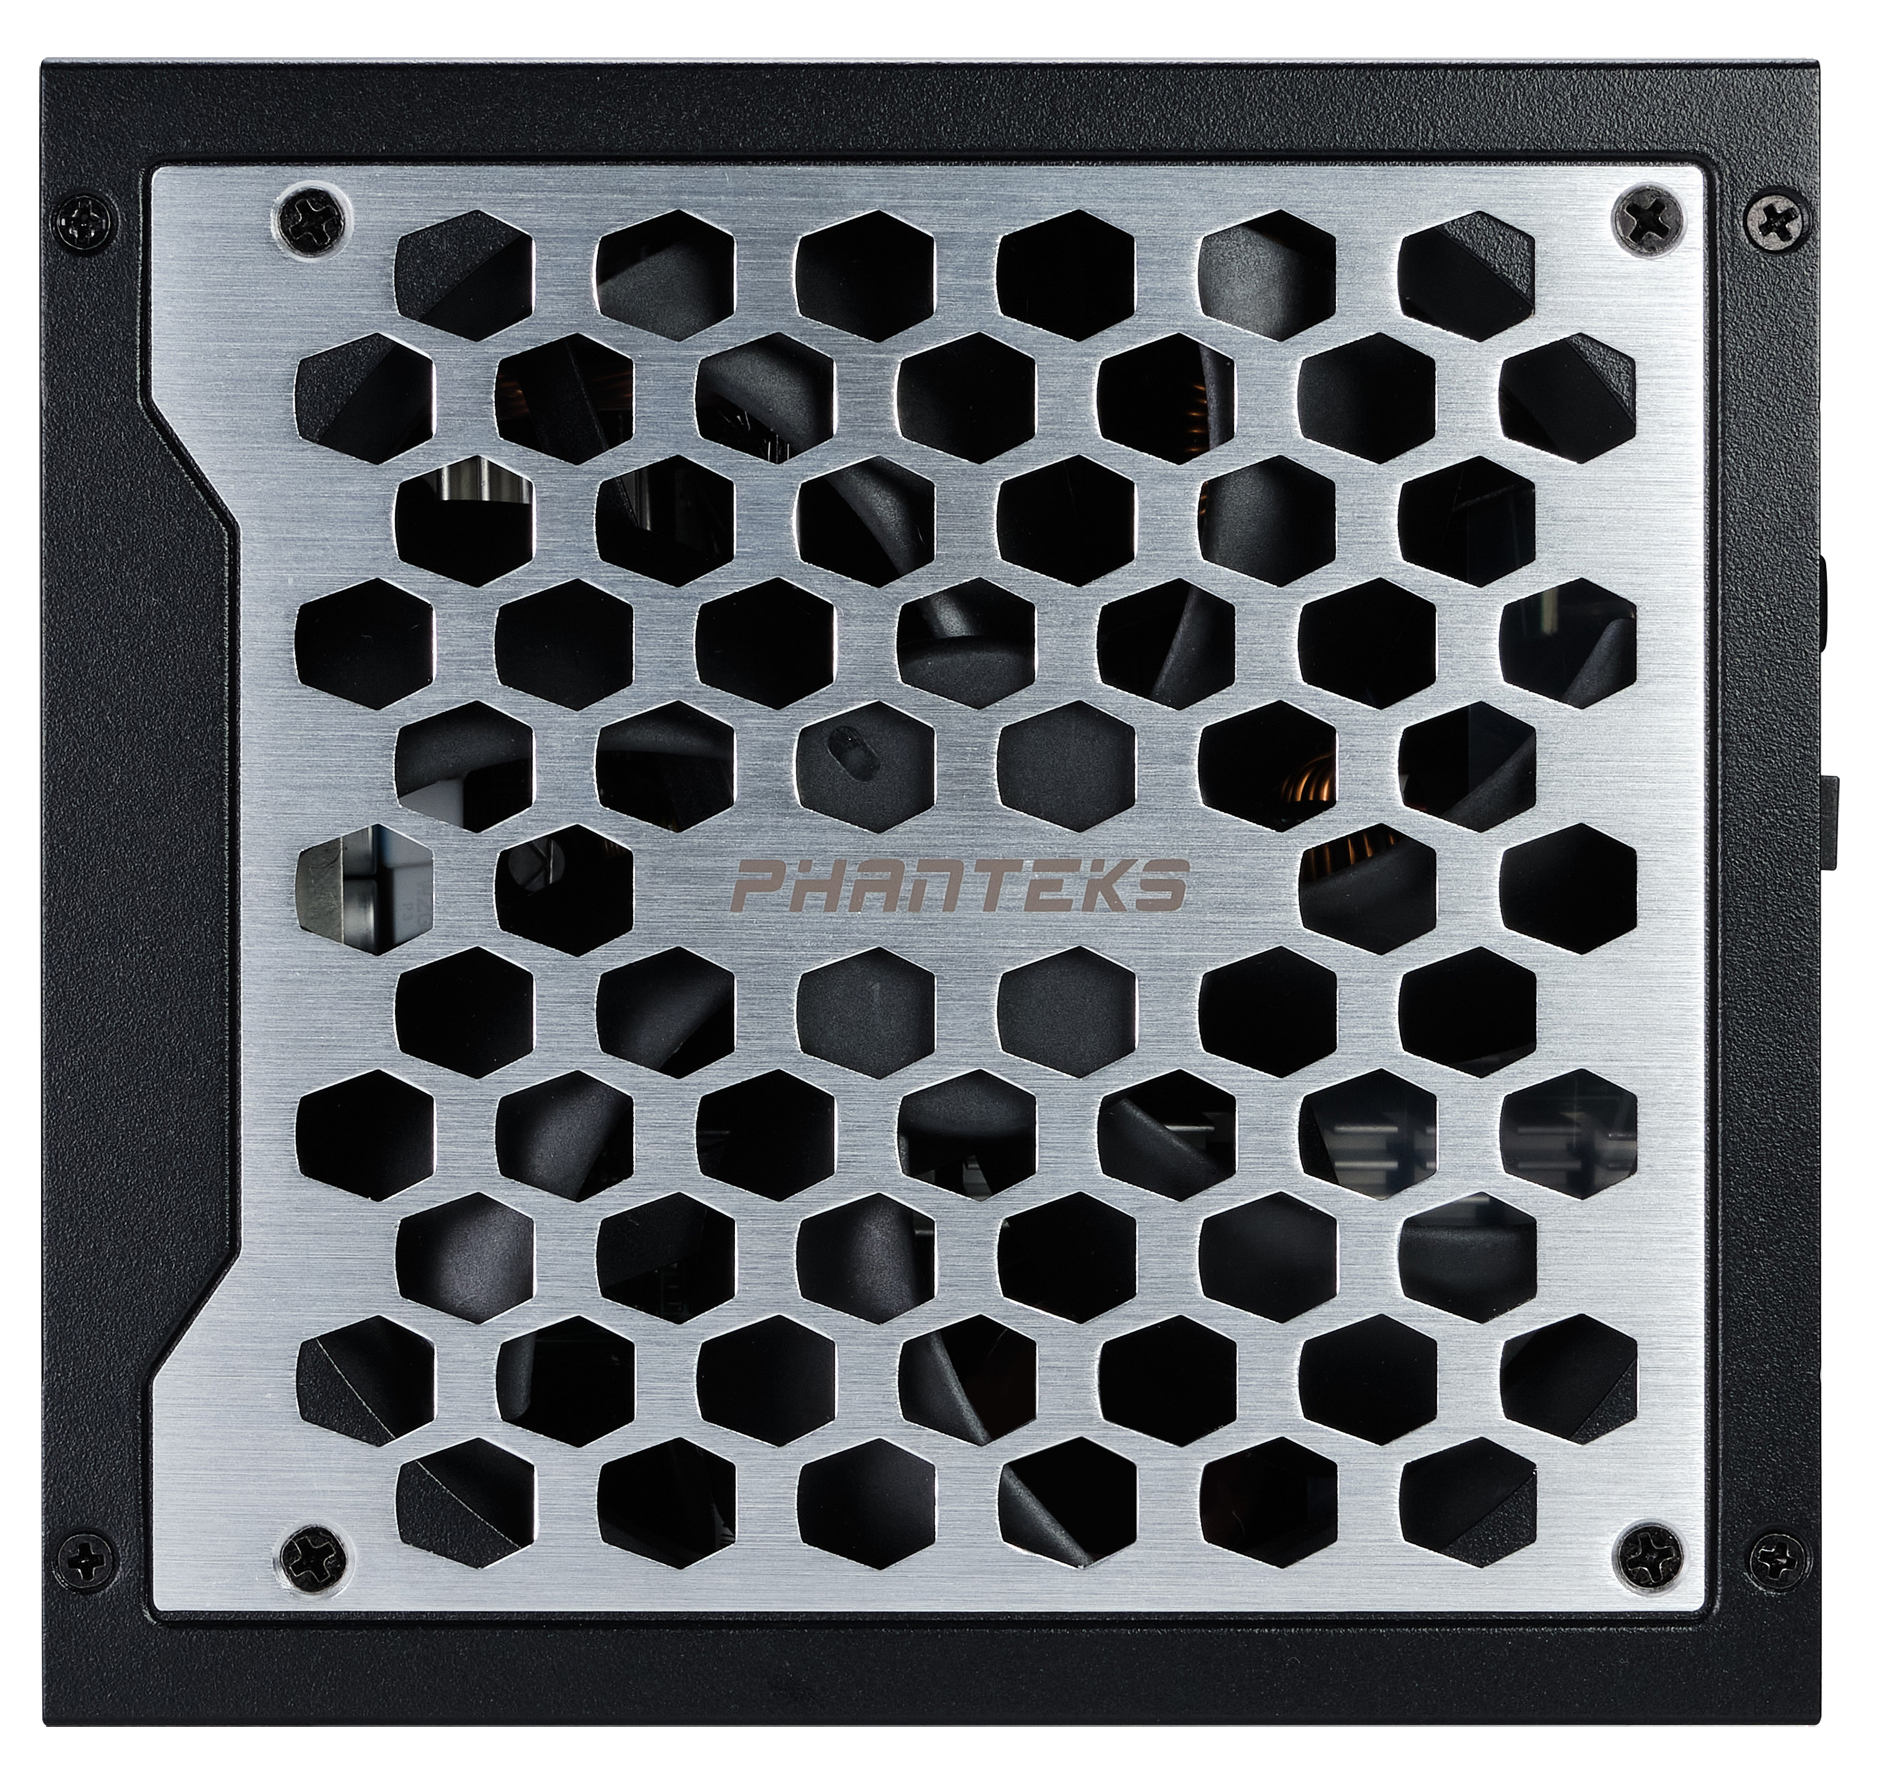 Phanteks - Fuente Modular Phanteks Revolt ATX 3.0 PCIe 5.0 1200W Platinum Preta (Sin Cables Incluídos)